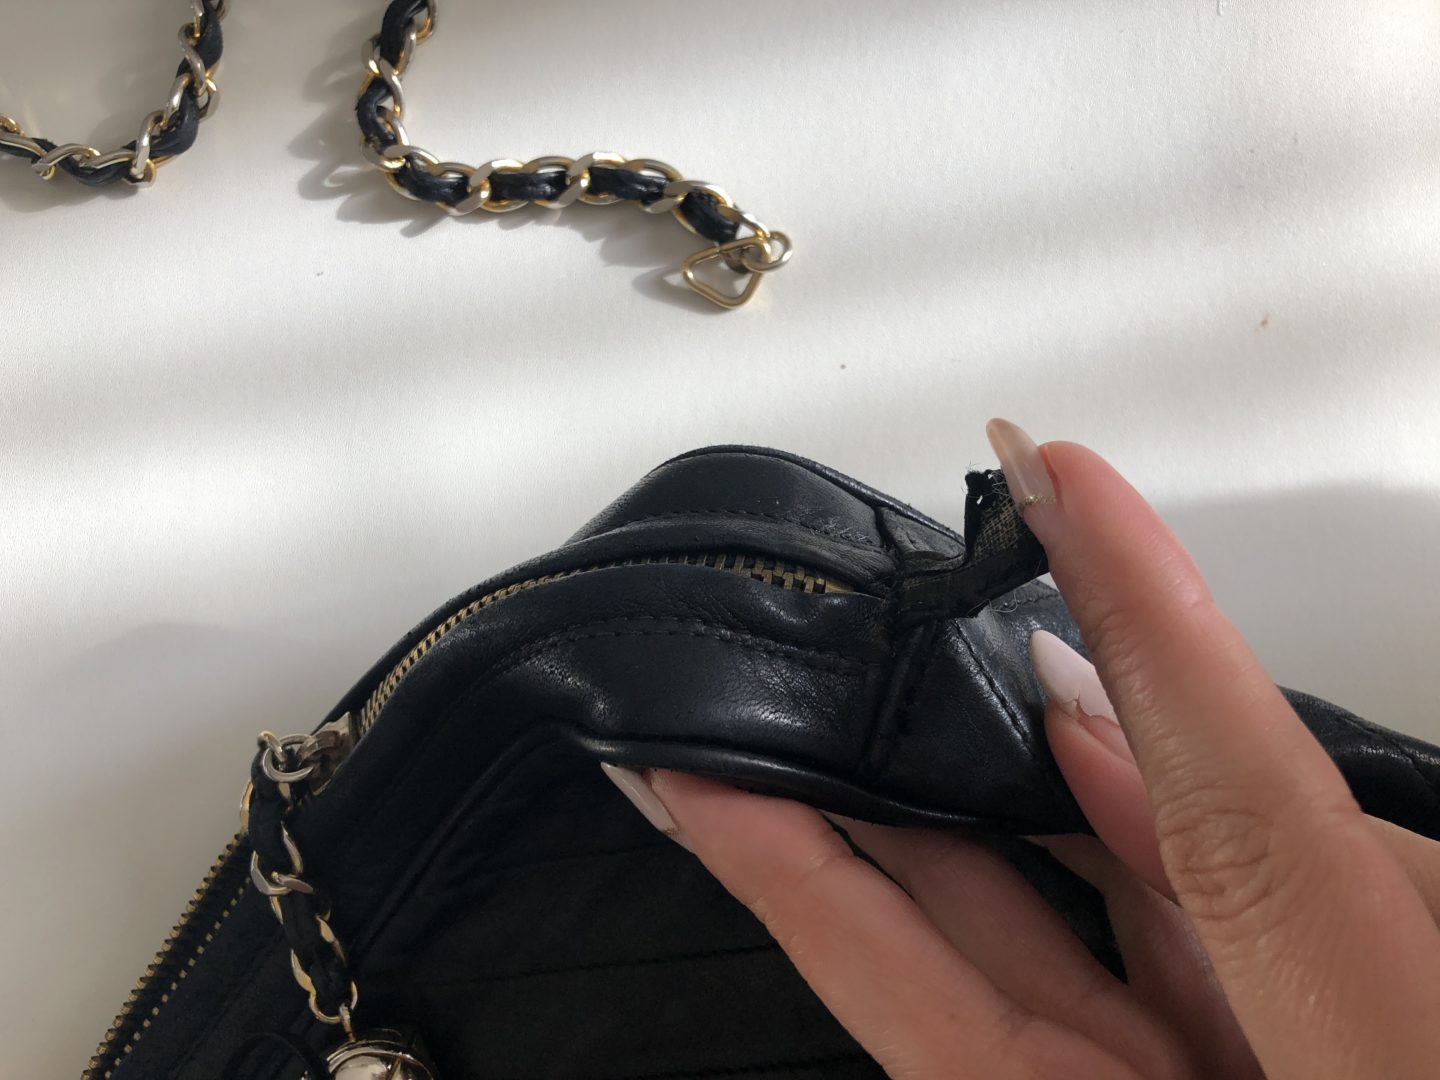 How to Vintage Chanel Bag - Vintage Splendor Shares Tips